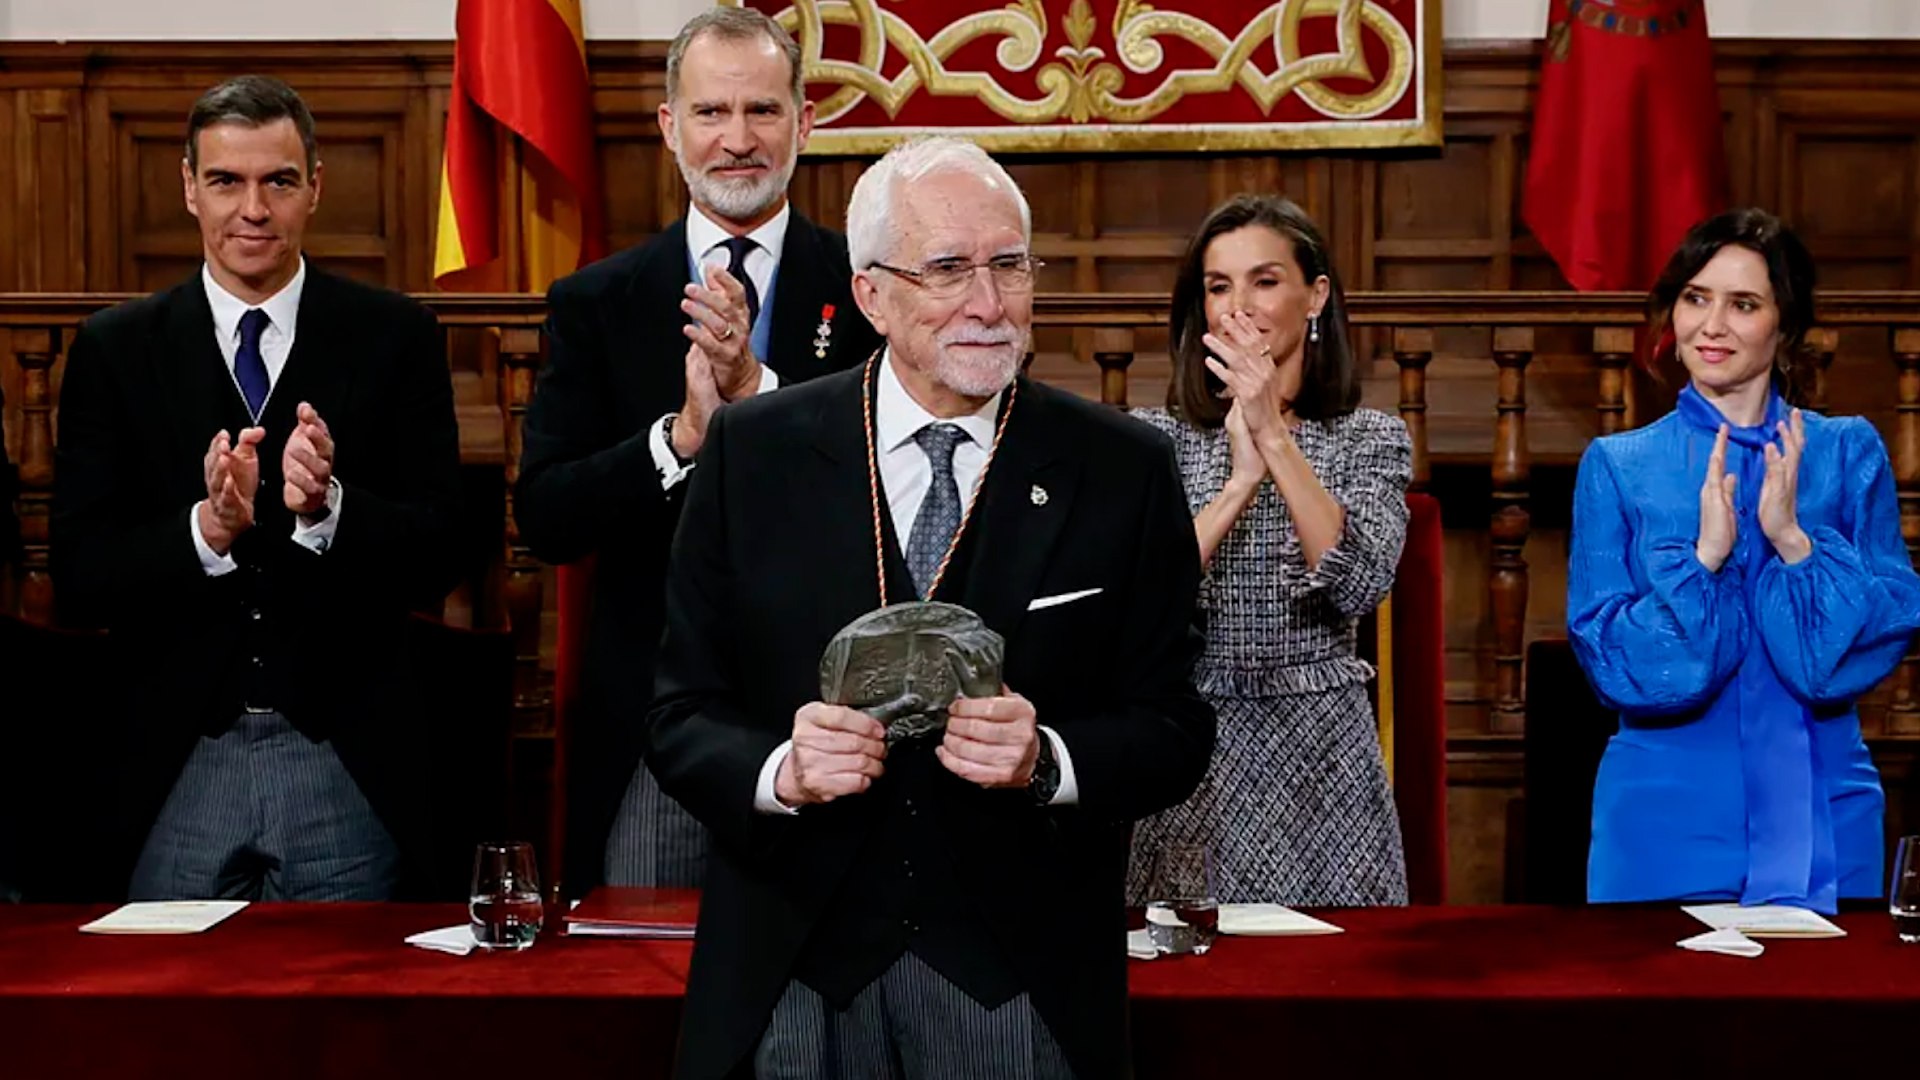 Luis Mateo Dez recibe el Premio Cervantes: "Es un da de esos que marcan tu vida"